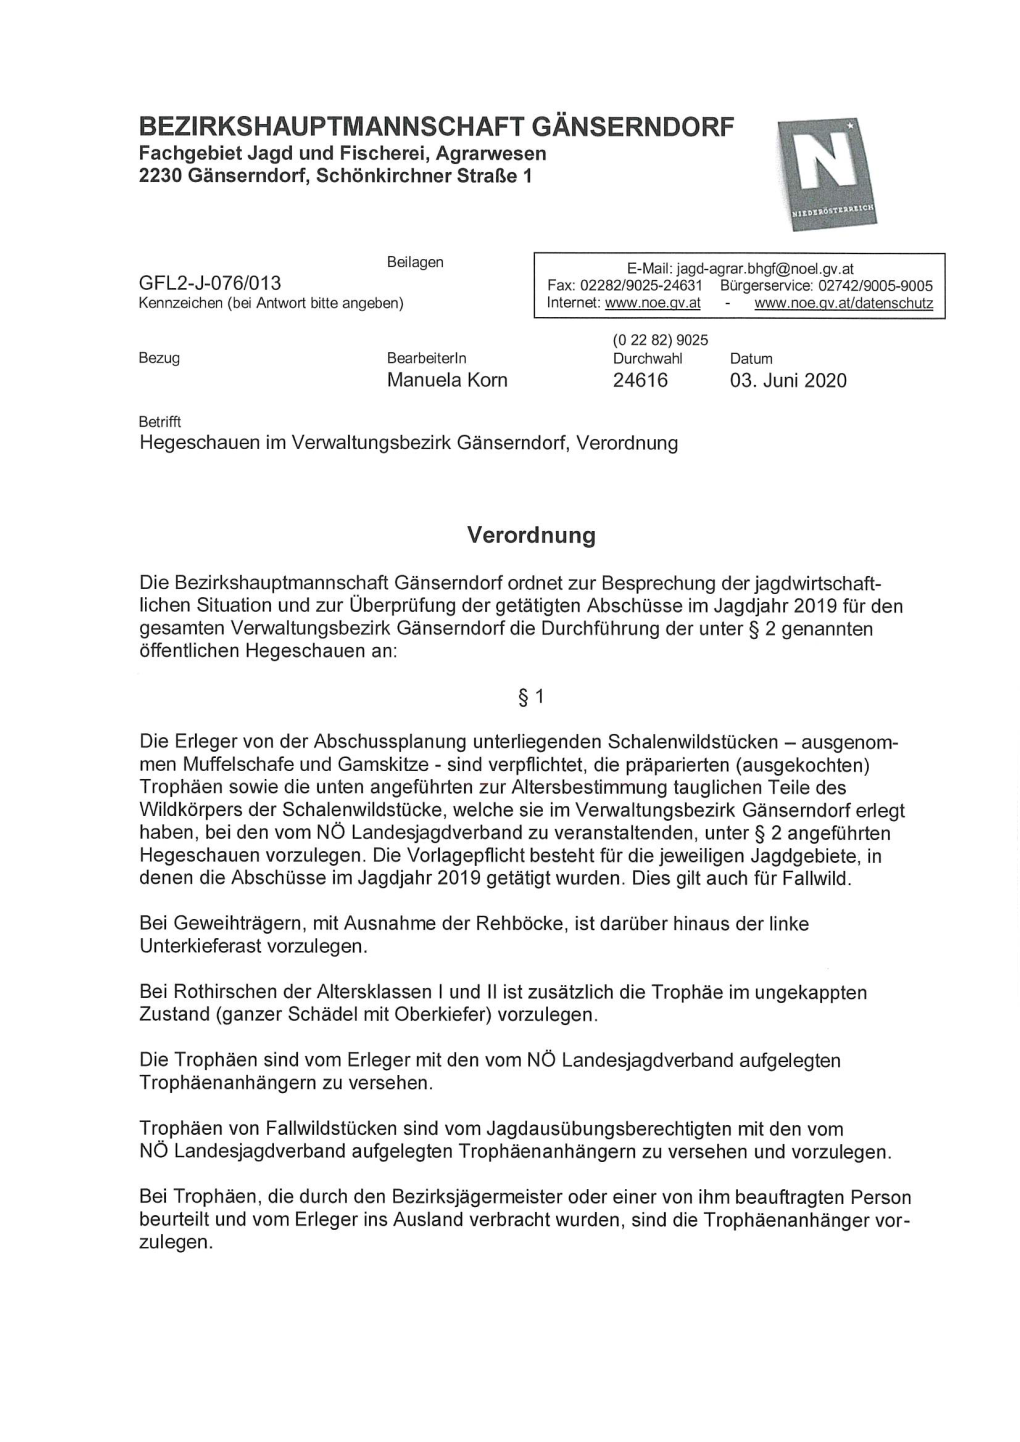 Hegeschauen Im Verwaltungsbezirk Gänserndorf, Verordnung